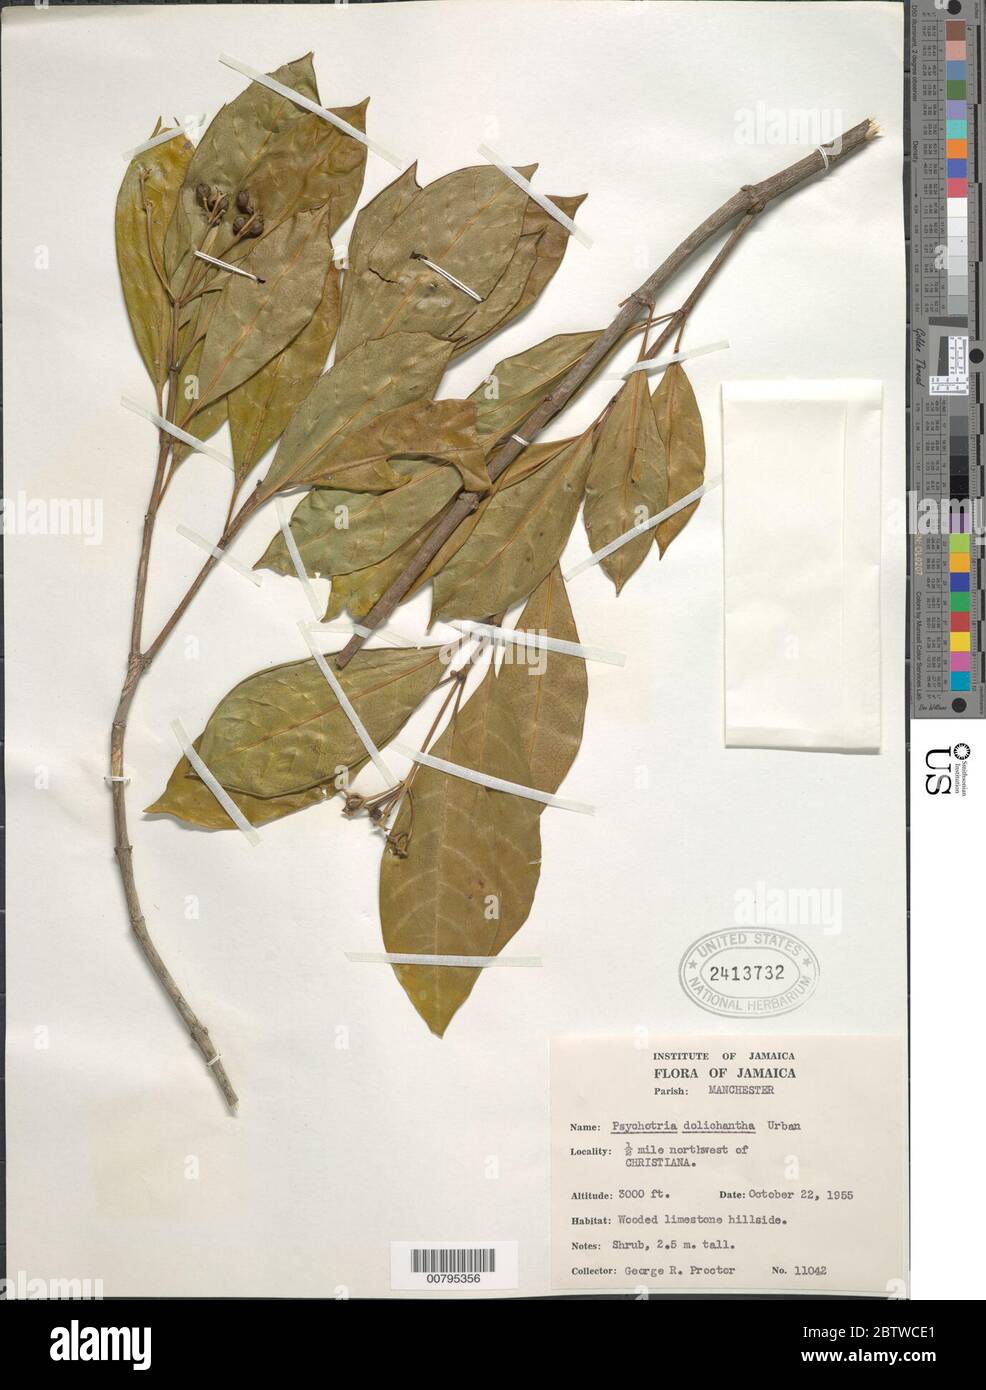 Psychotria dolichantha Urb. Stock Photo